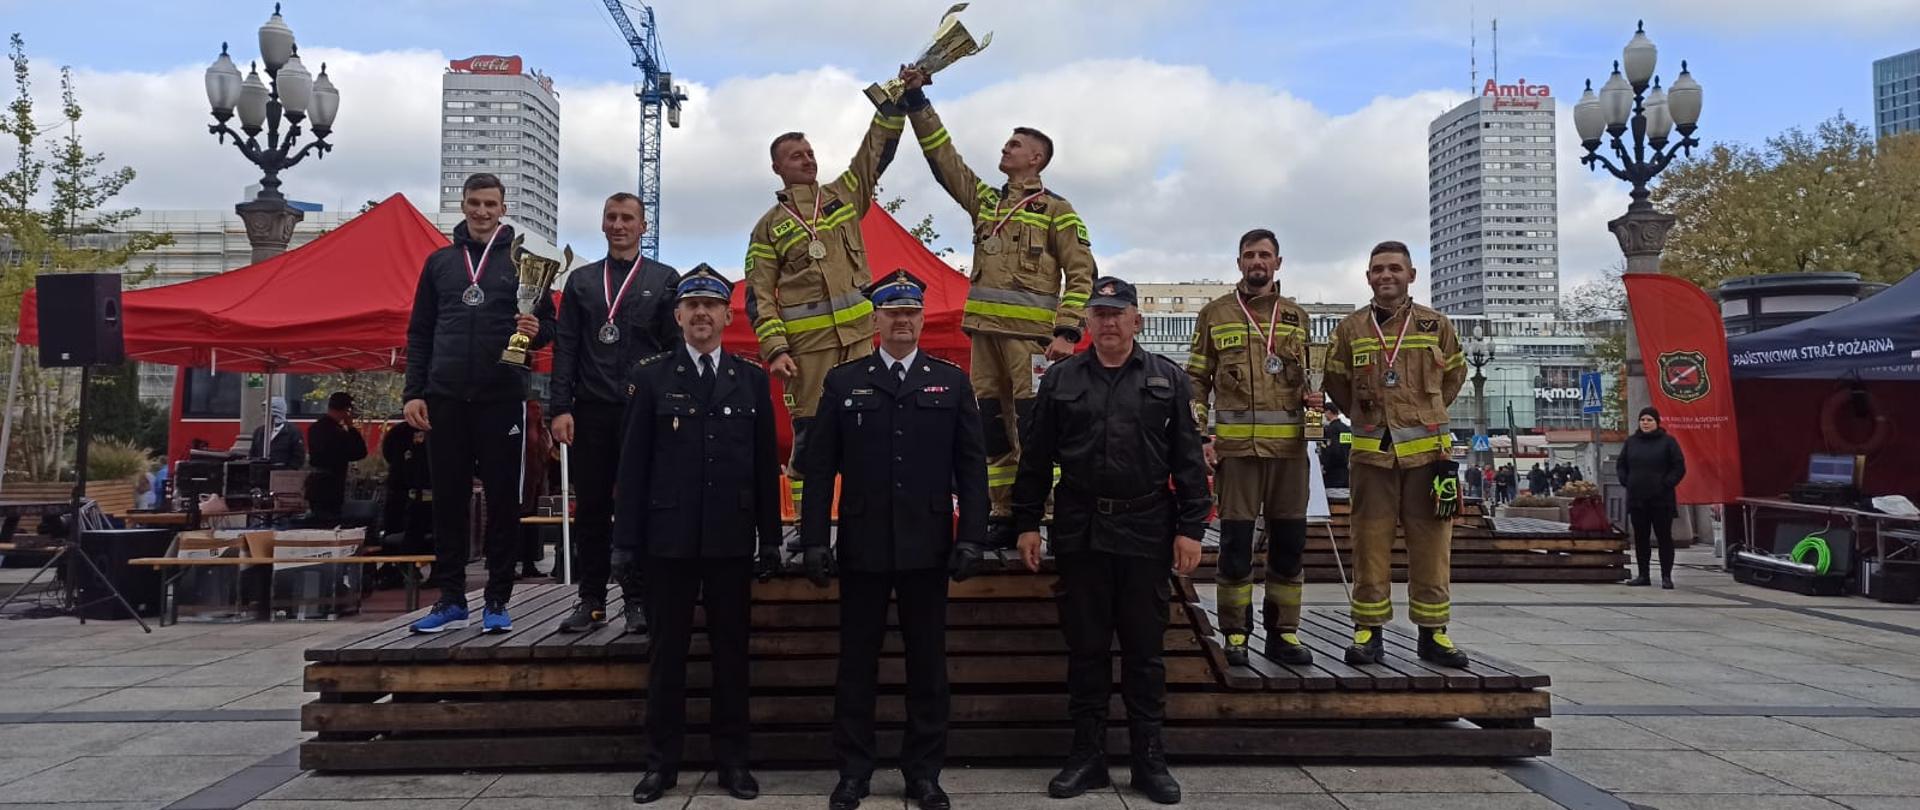 Miejsce na podium Funkcjonariuszy KM PSP w Białymstoku podczas Mistrzostw Polski Strażaków w Biegu po Schodach 